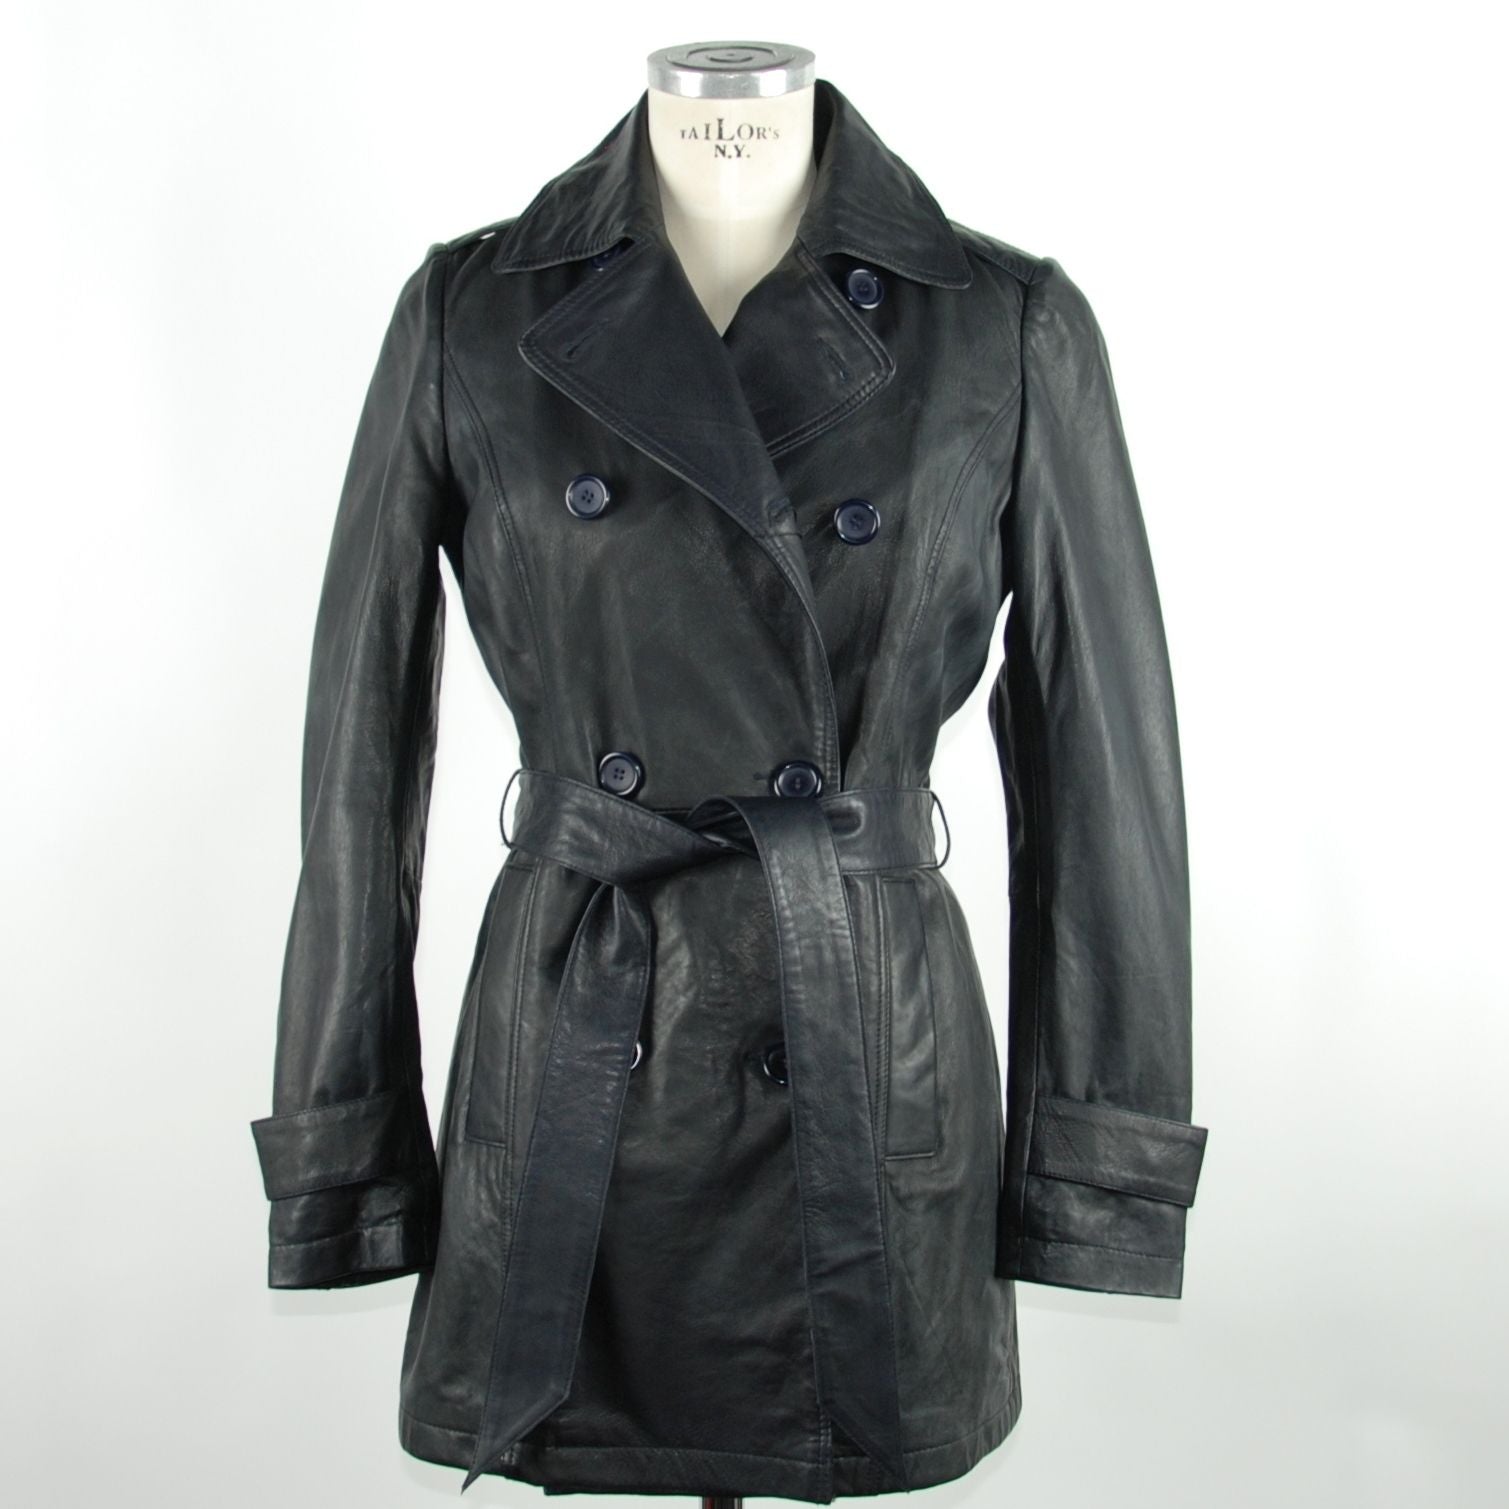 Emilio Romanelli Blue Vera Leather Jackets & Coat